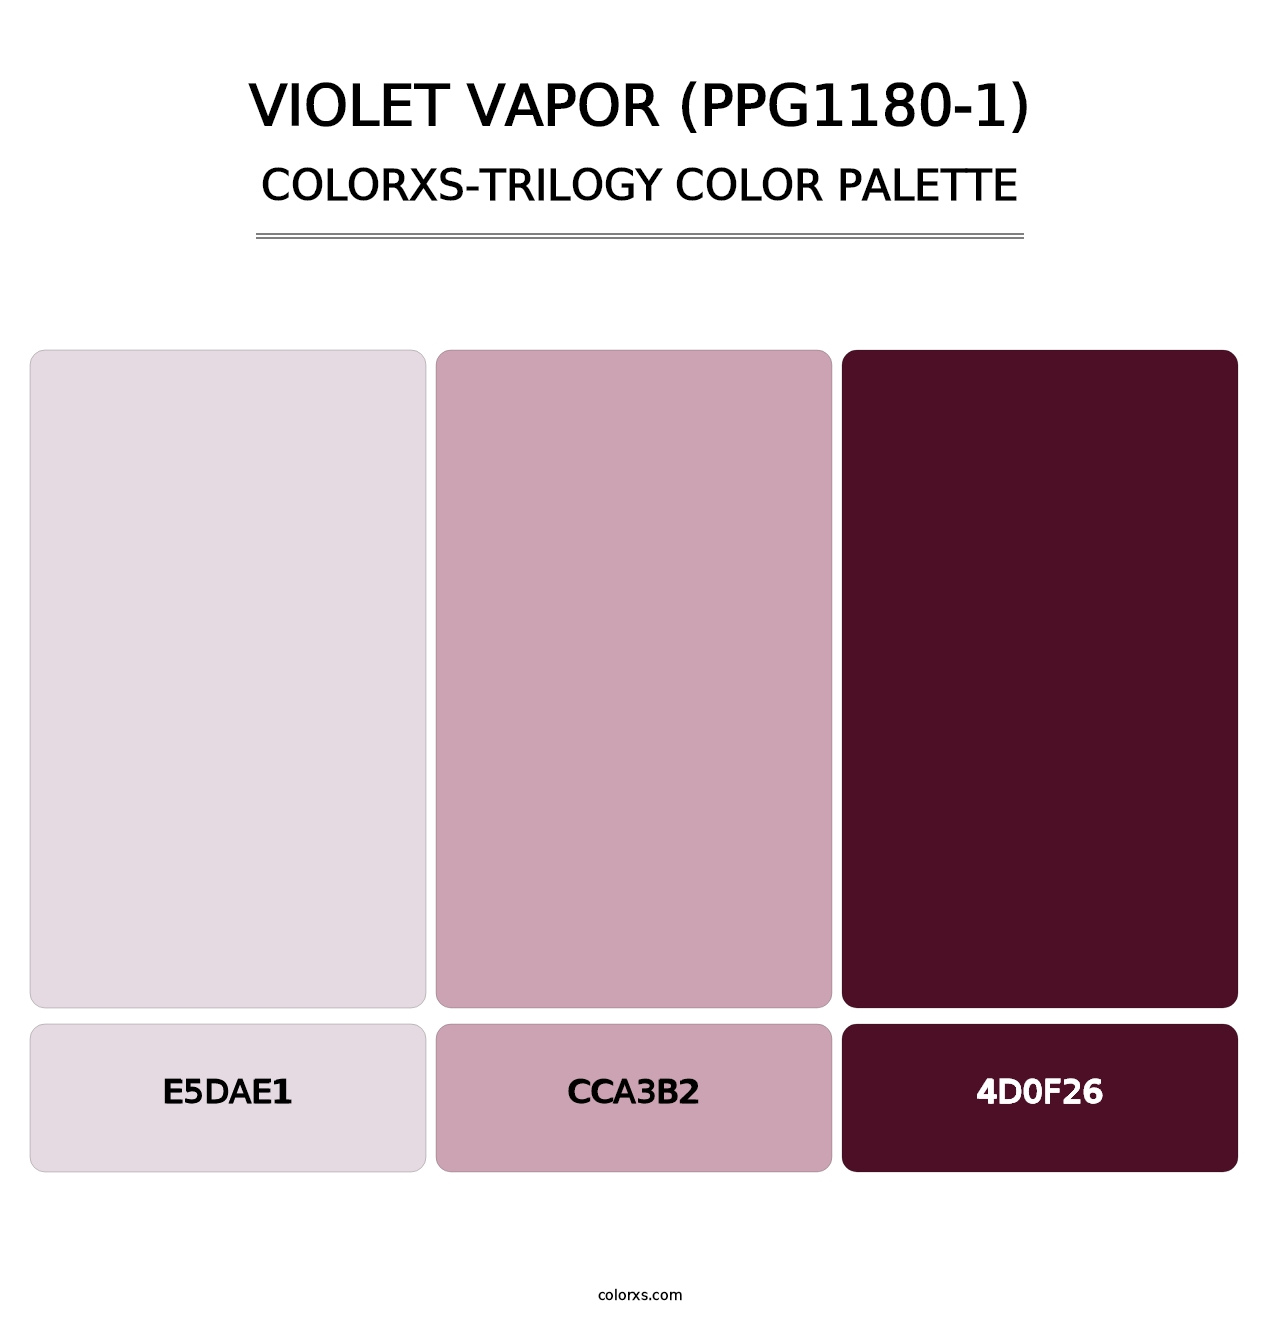 Violet Vapor (PPG1180-1) - Colorxs Trilogy Palette